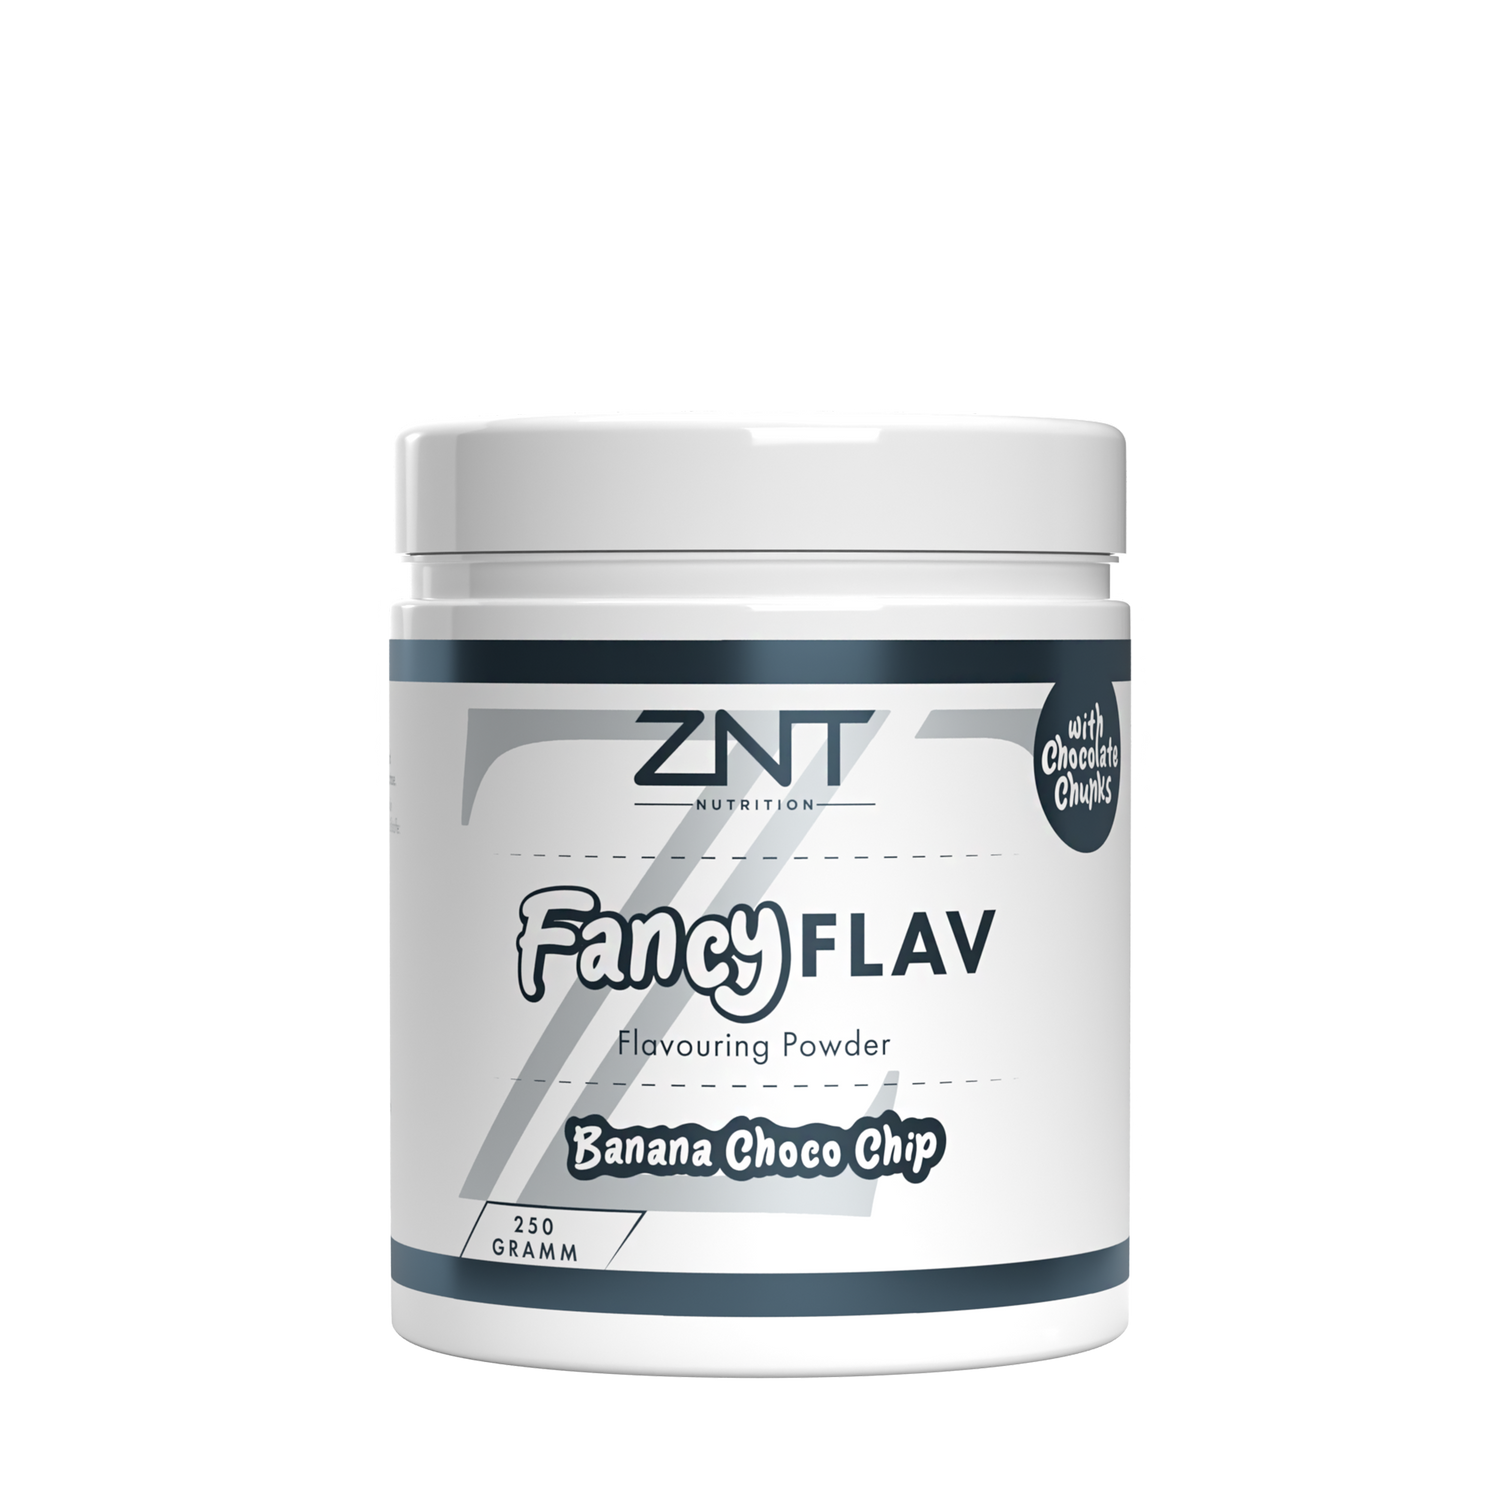 FANCY Flav - ZNT Nutrition